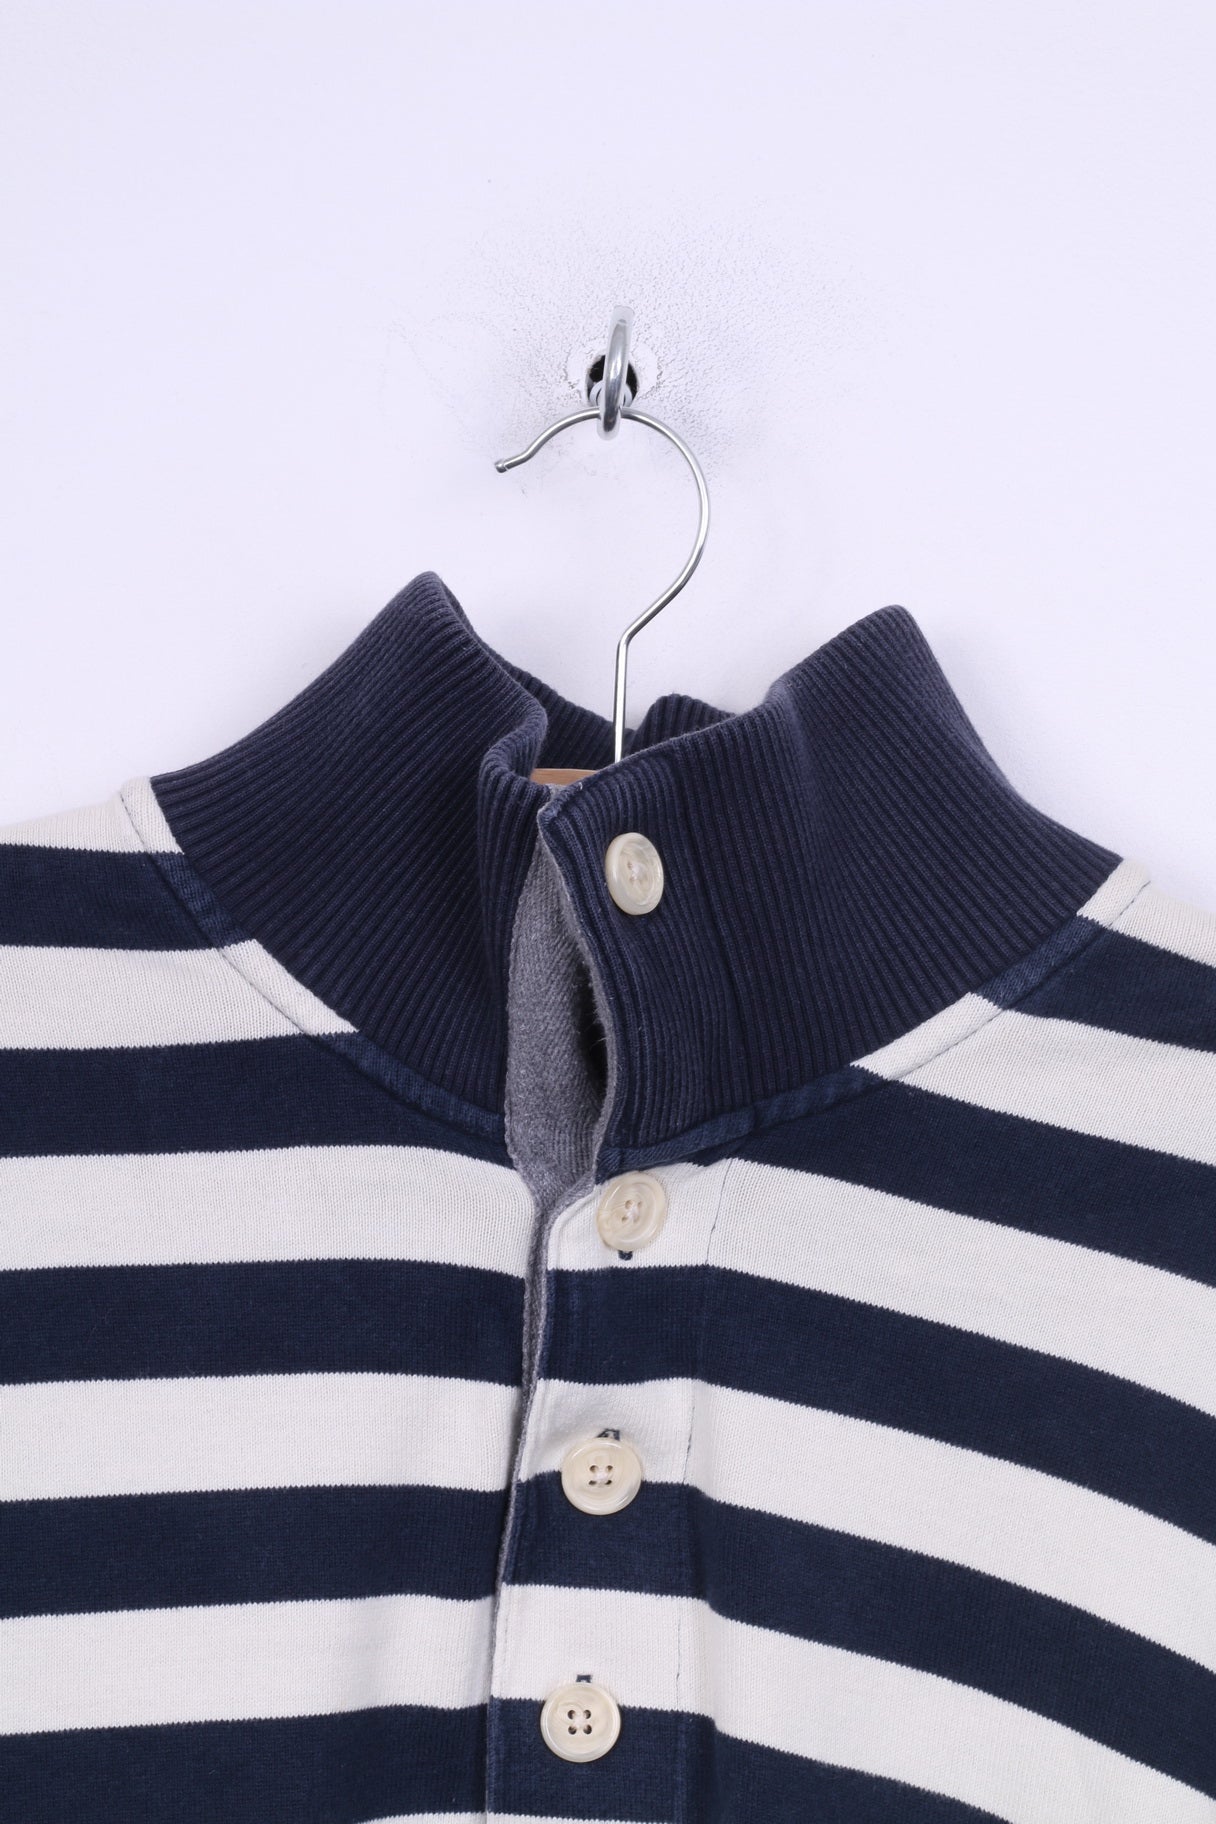 Gant Mens XL Jumper Cotton Sweater Striped Cotton Navy